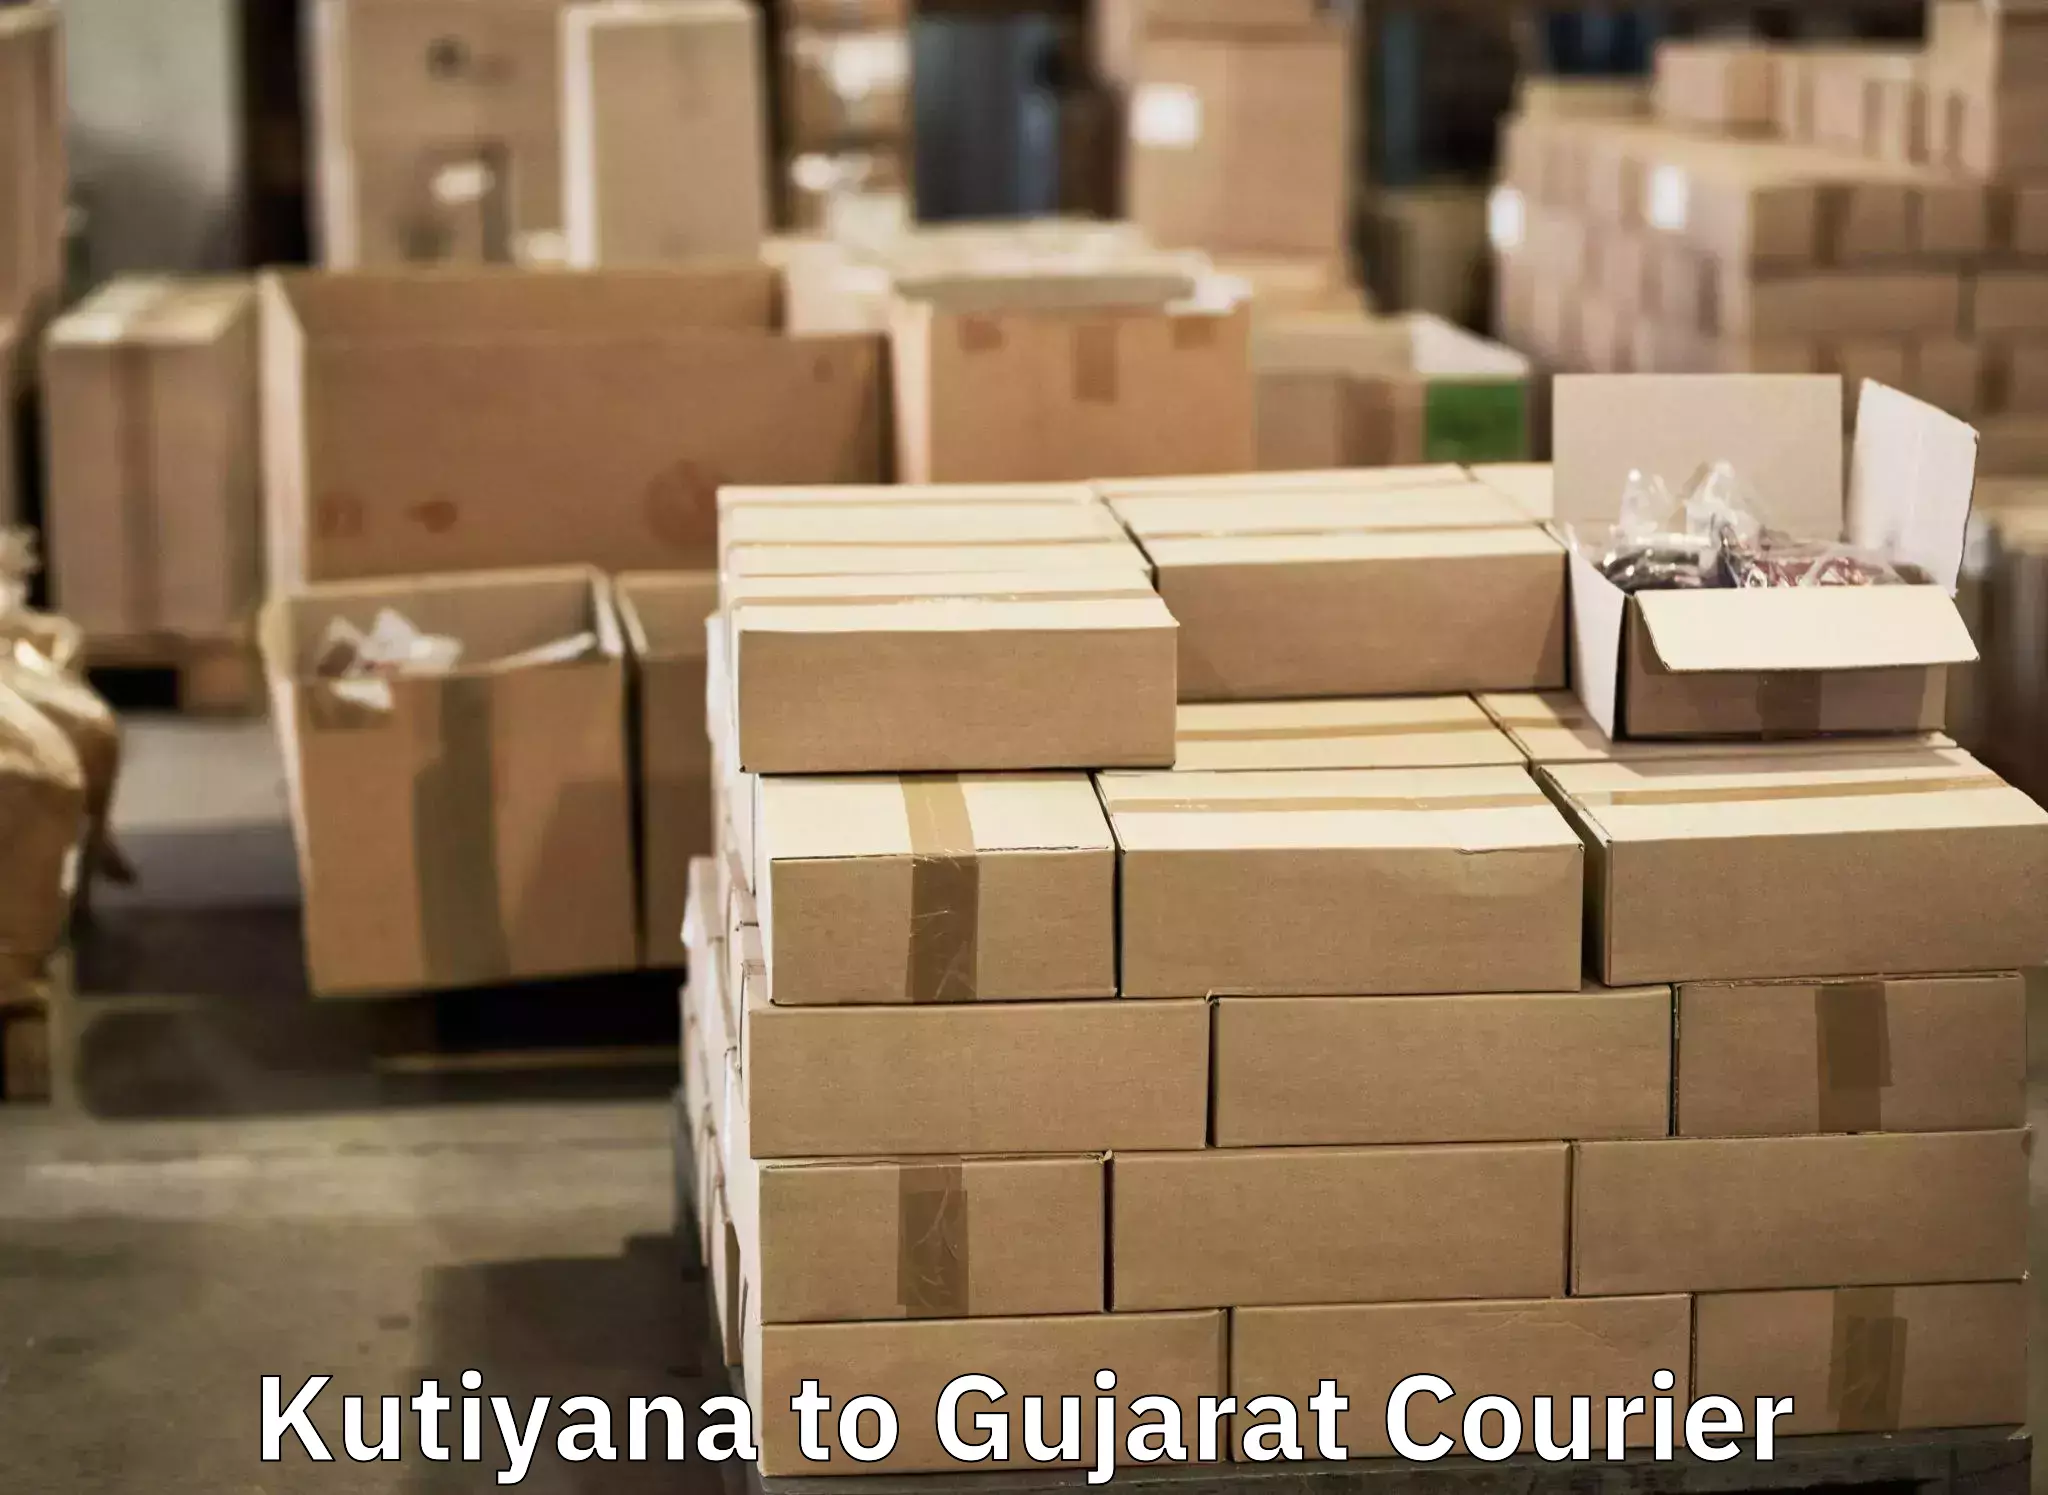 Urgent luggage shipment Kutiyana to Surat